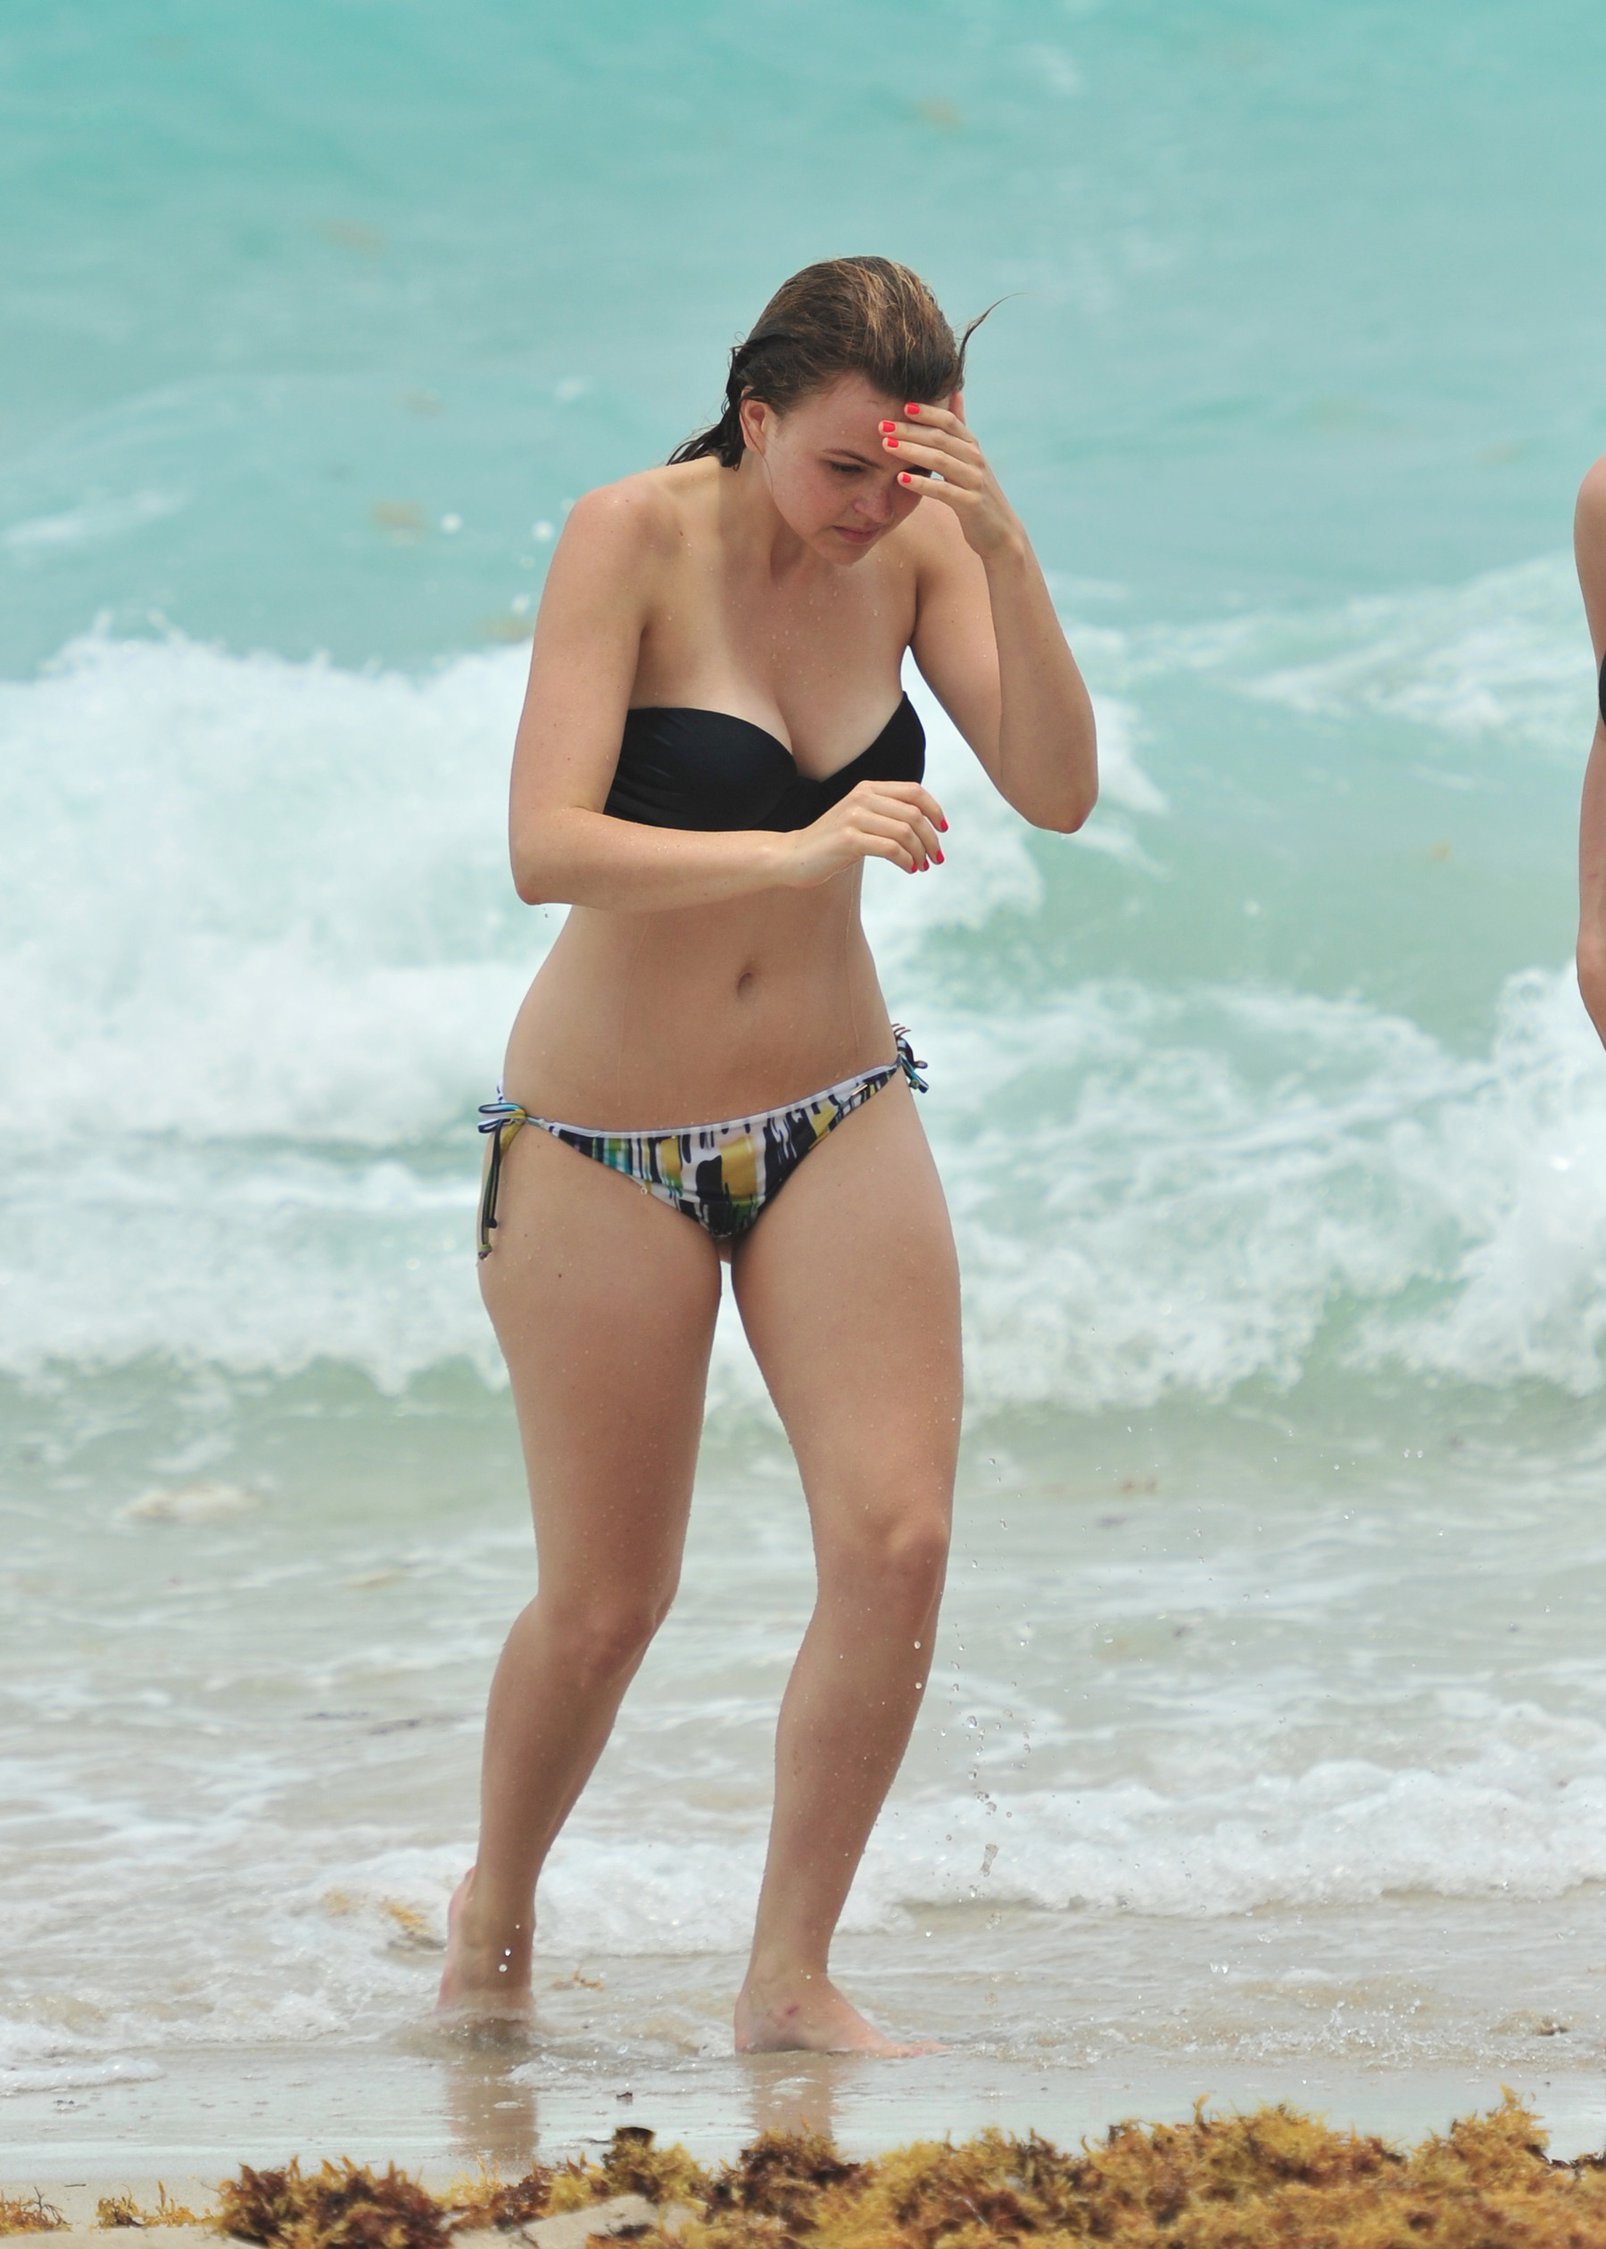 Aimee Teegarden Bikini Pictures. 